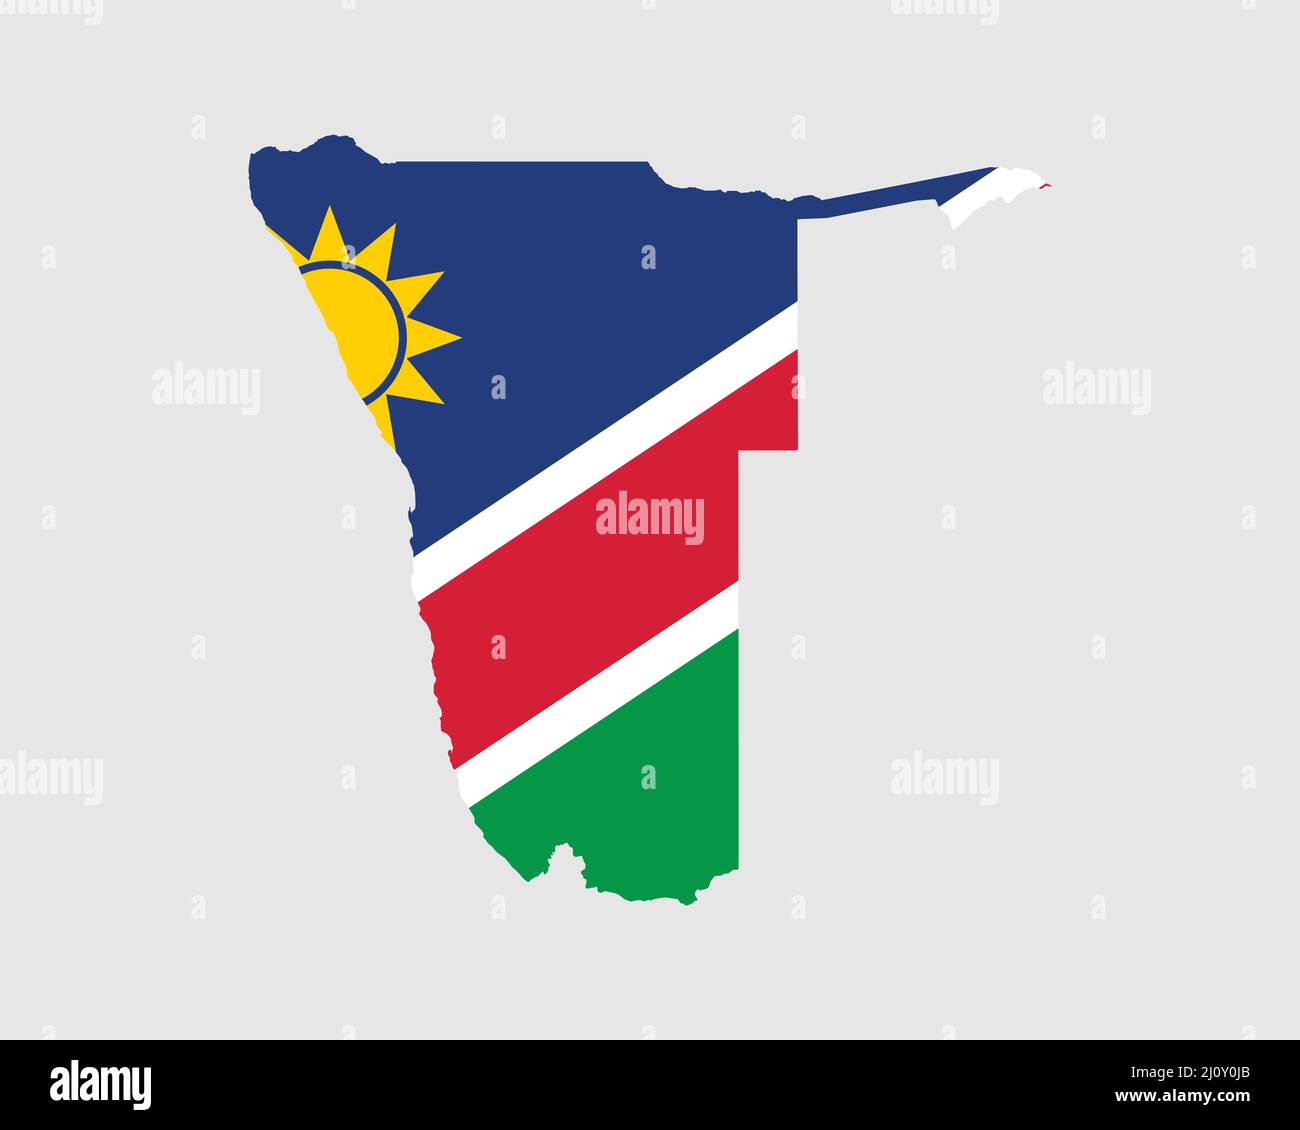 Namibia Flaggenkarte. Karte der Republik Namibia mit dem namibischen Länderbanner. Vektorgrafik. Stock Vektor